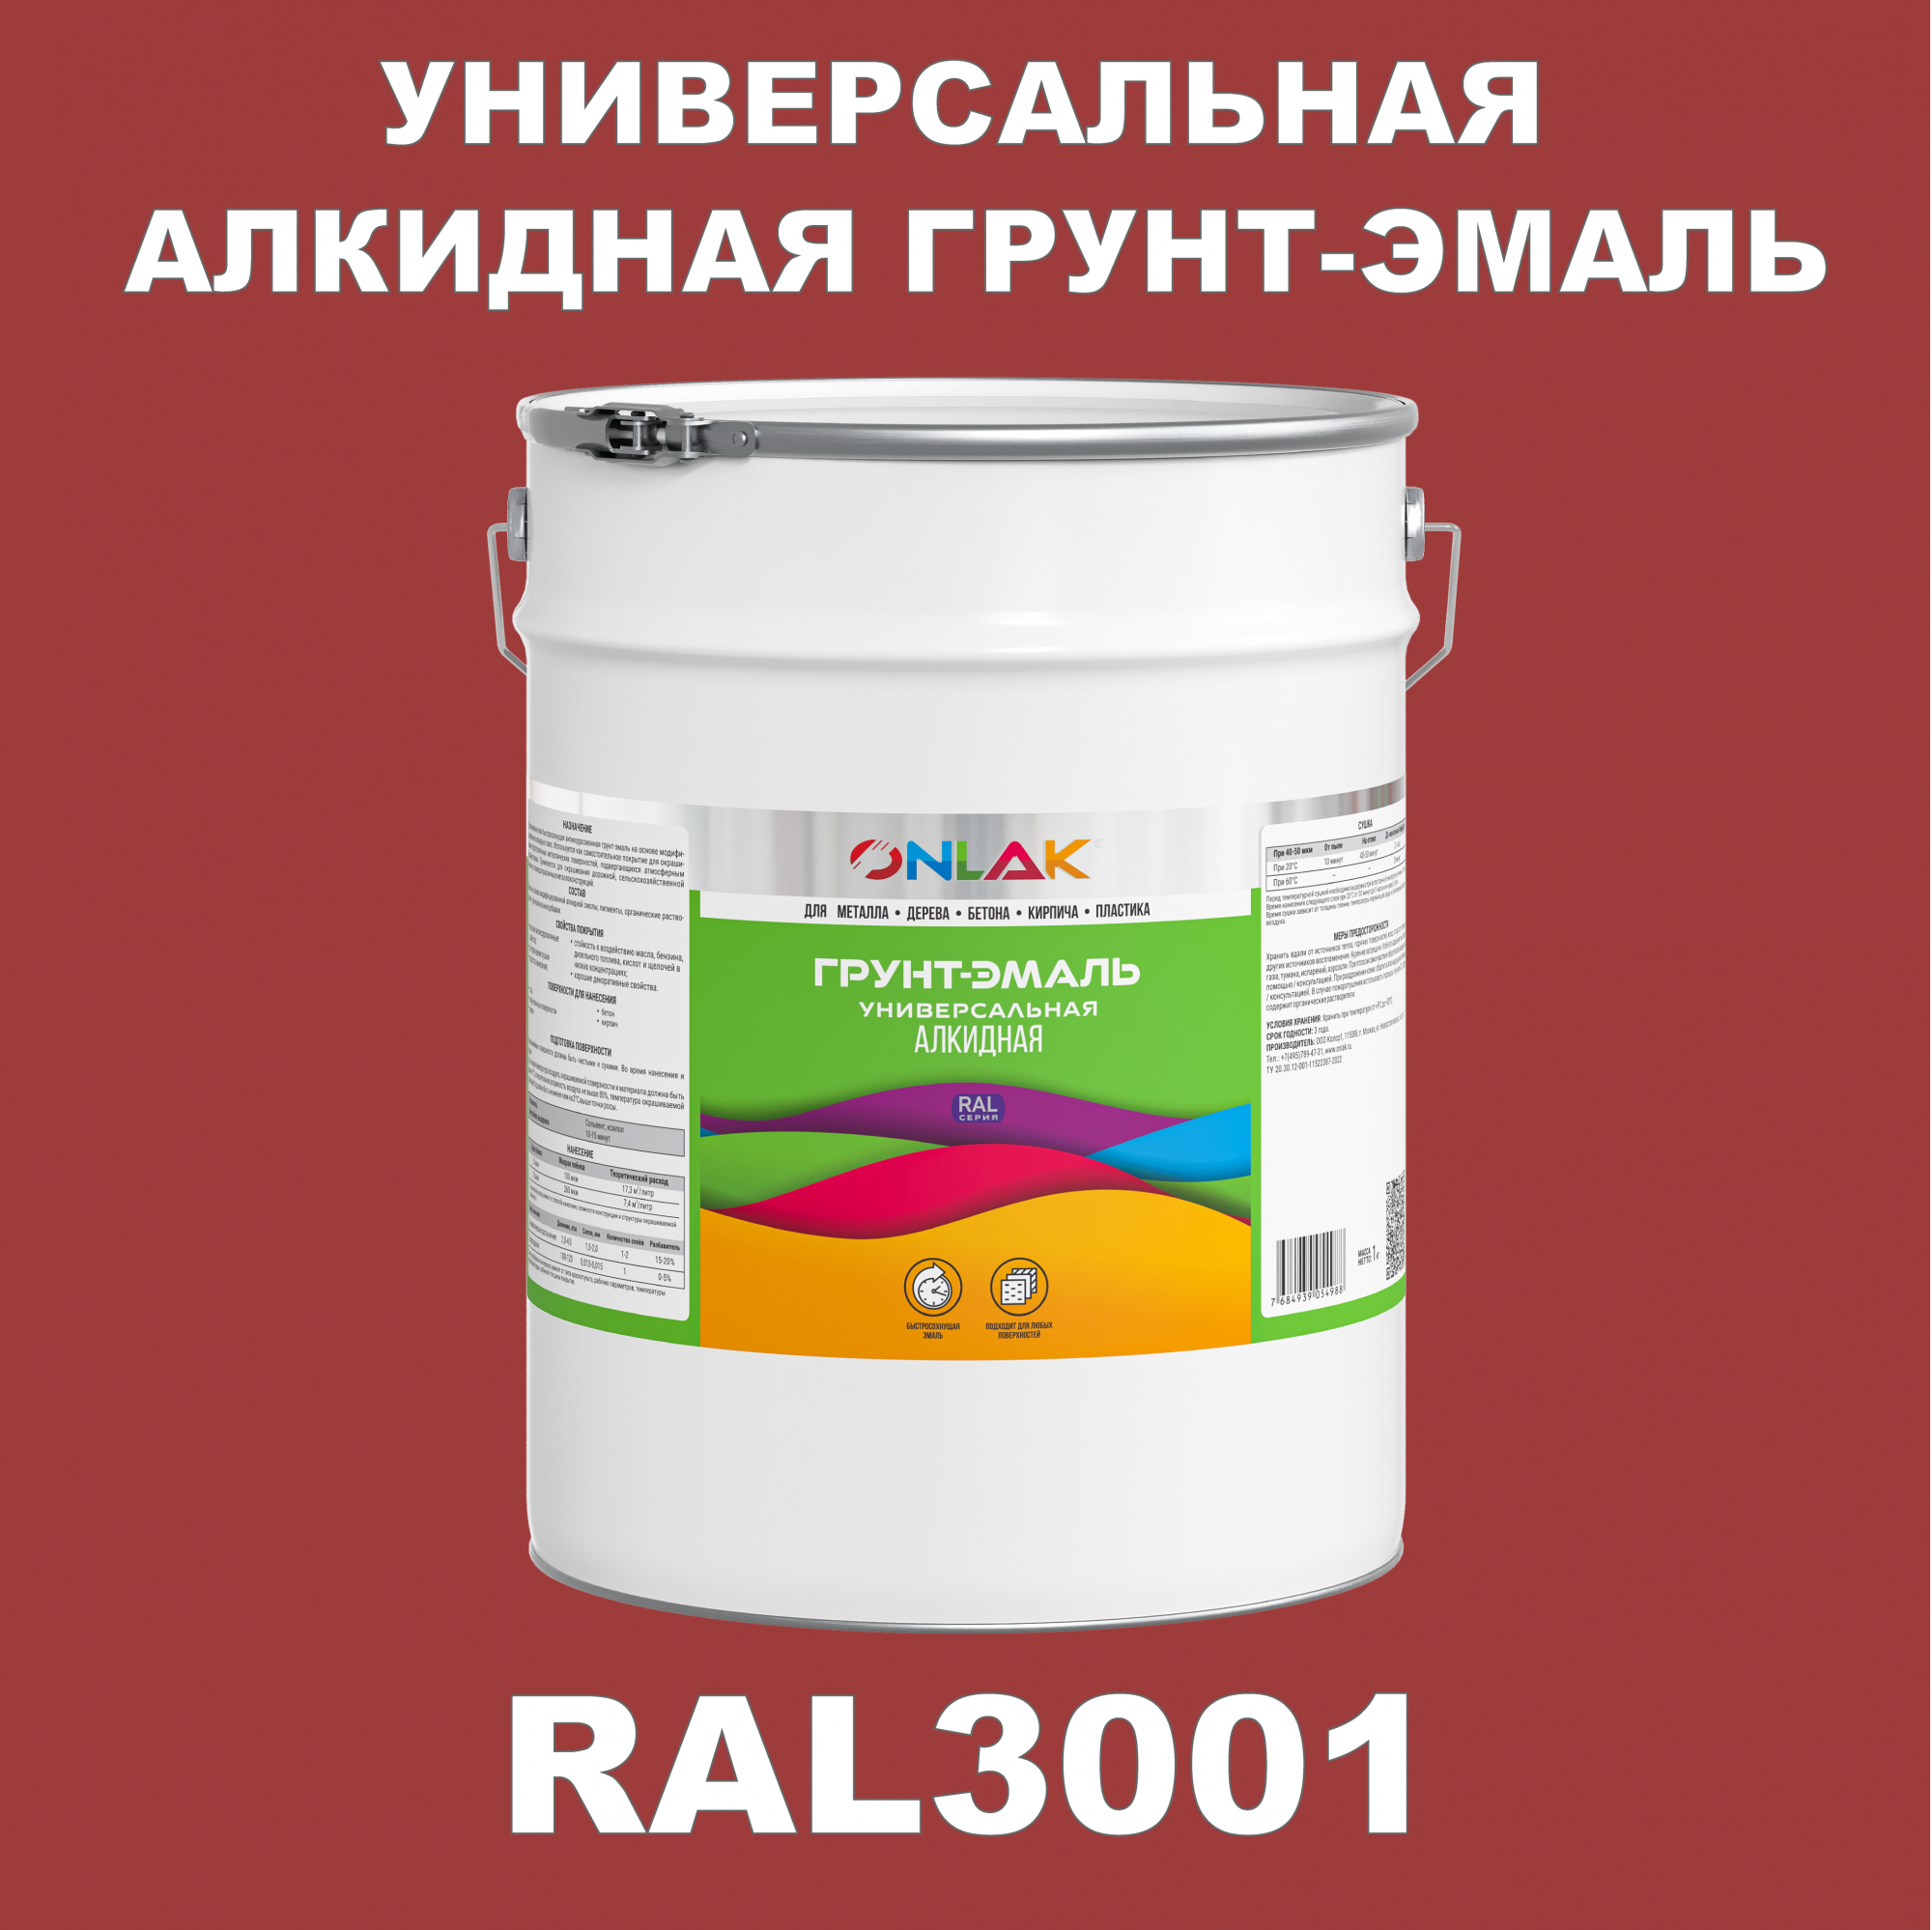 Грунт-эмаль ONLAK 1К RAL3001 антикоррозионная алкидная по металлу по ржавчине 20 кг